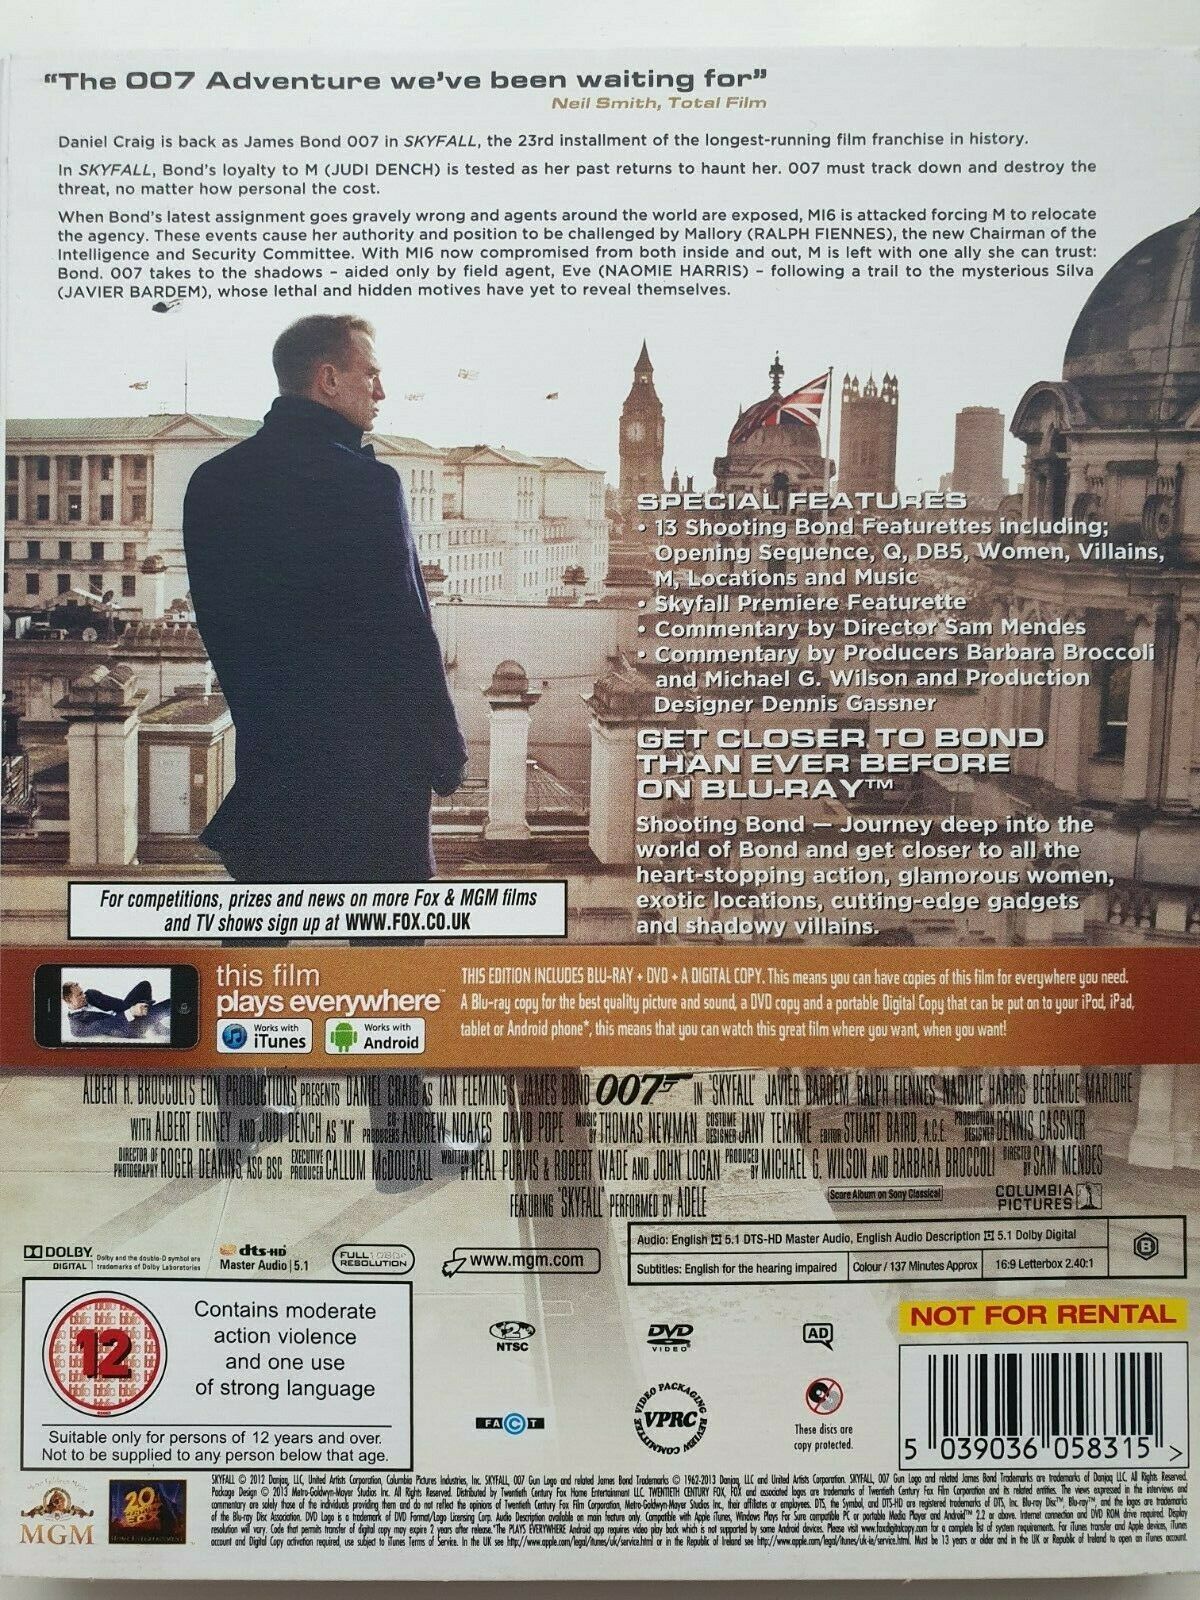 5039036058315 Skyfall 007 Blu-ray + DVD + Digital  2013 English NEW SEALED